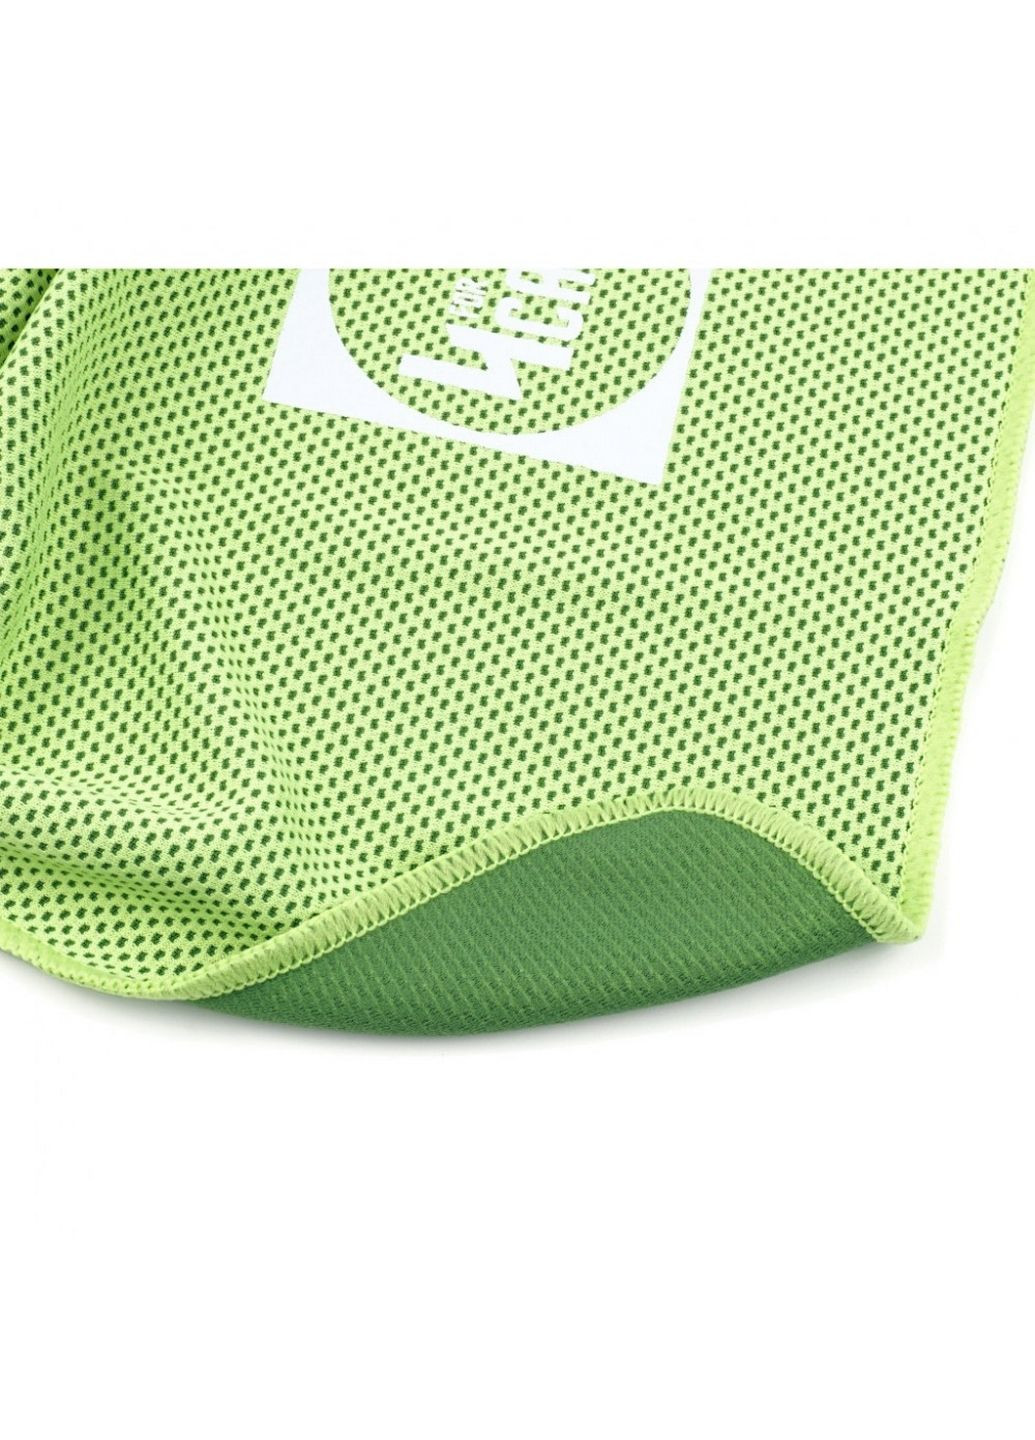 No Brand охлаждающее полотенце для фитнеса и спорта зеленый производство - Китай